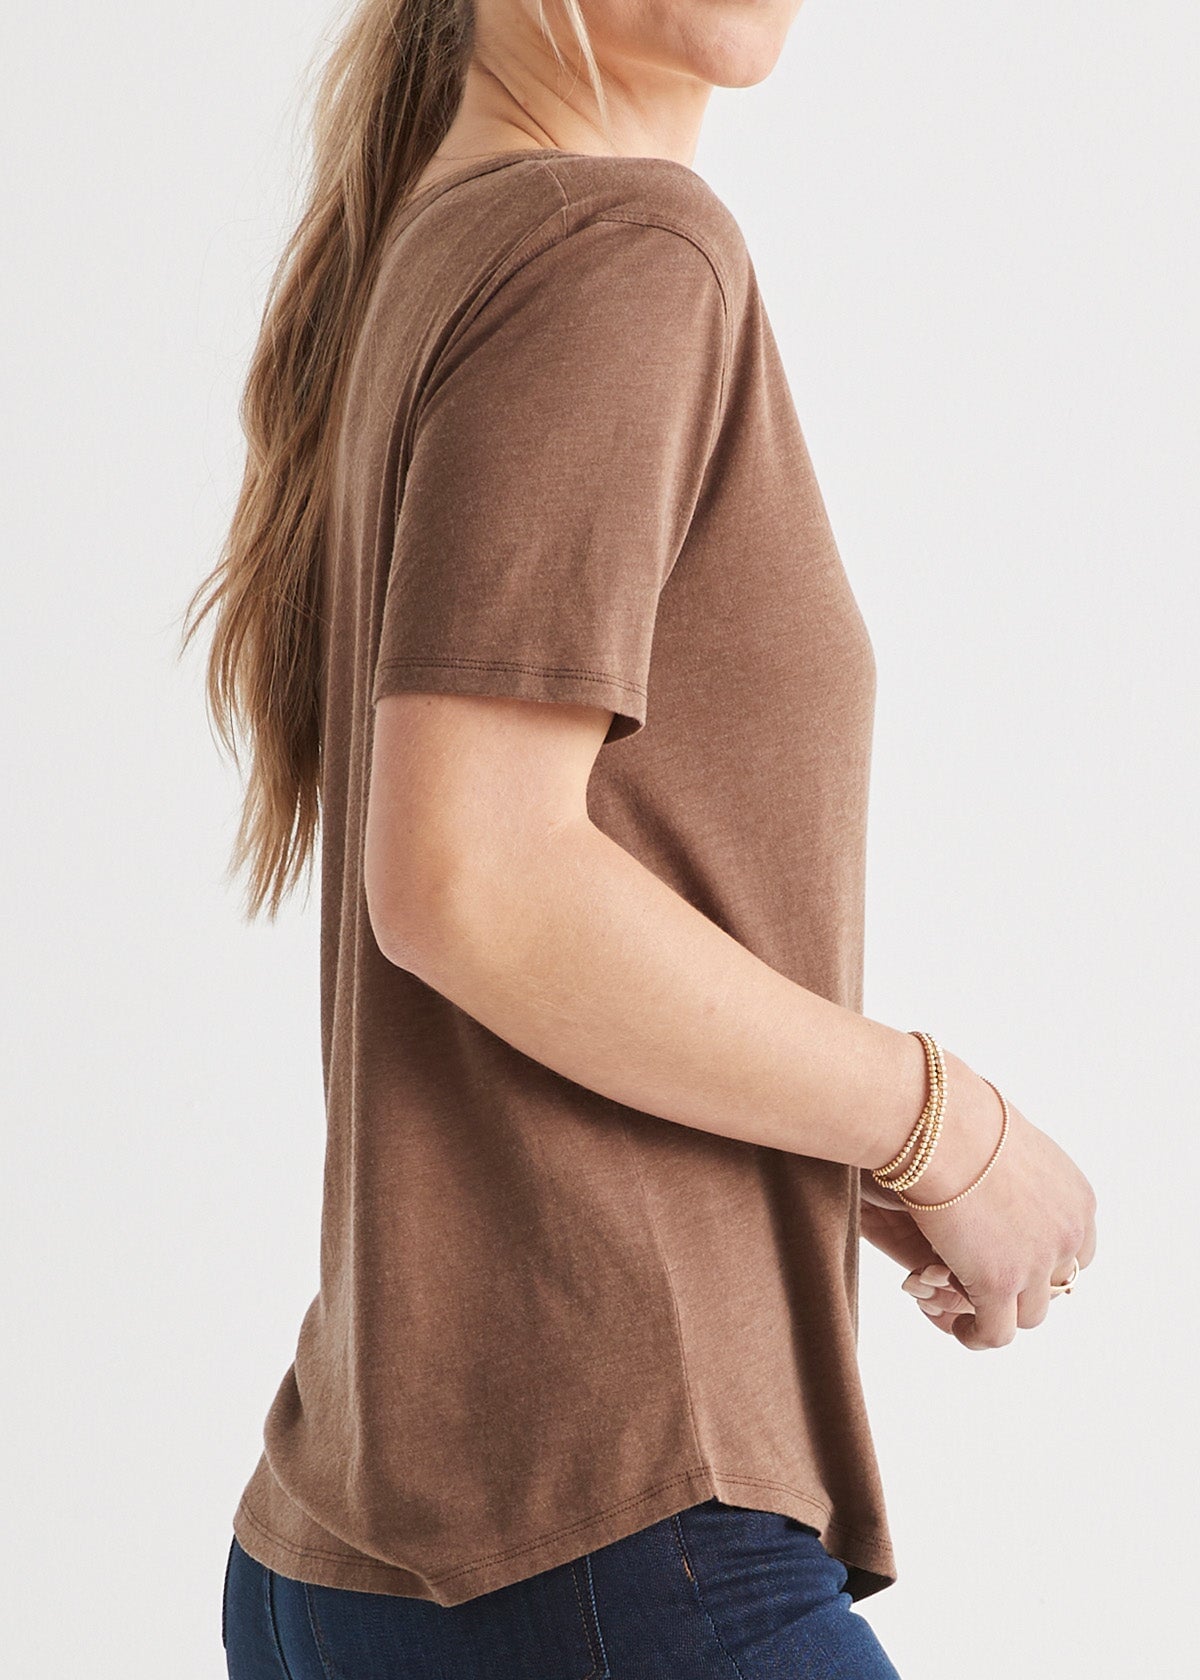 womens soft lightweight brown v-neck t-shirt side